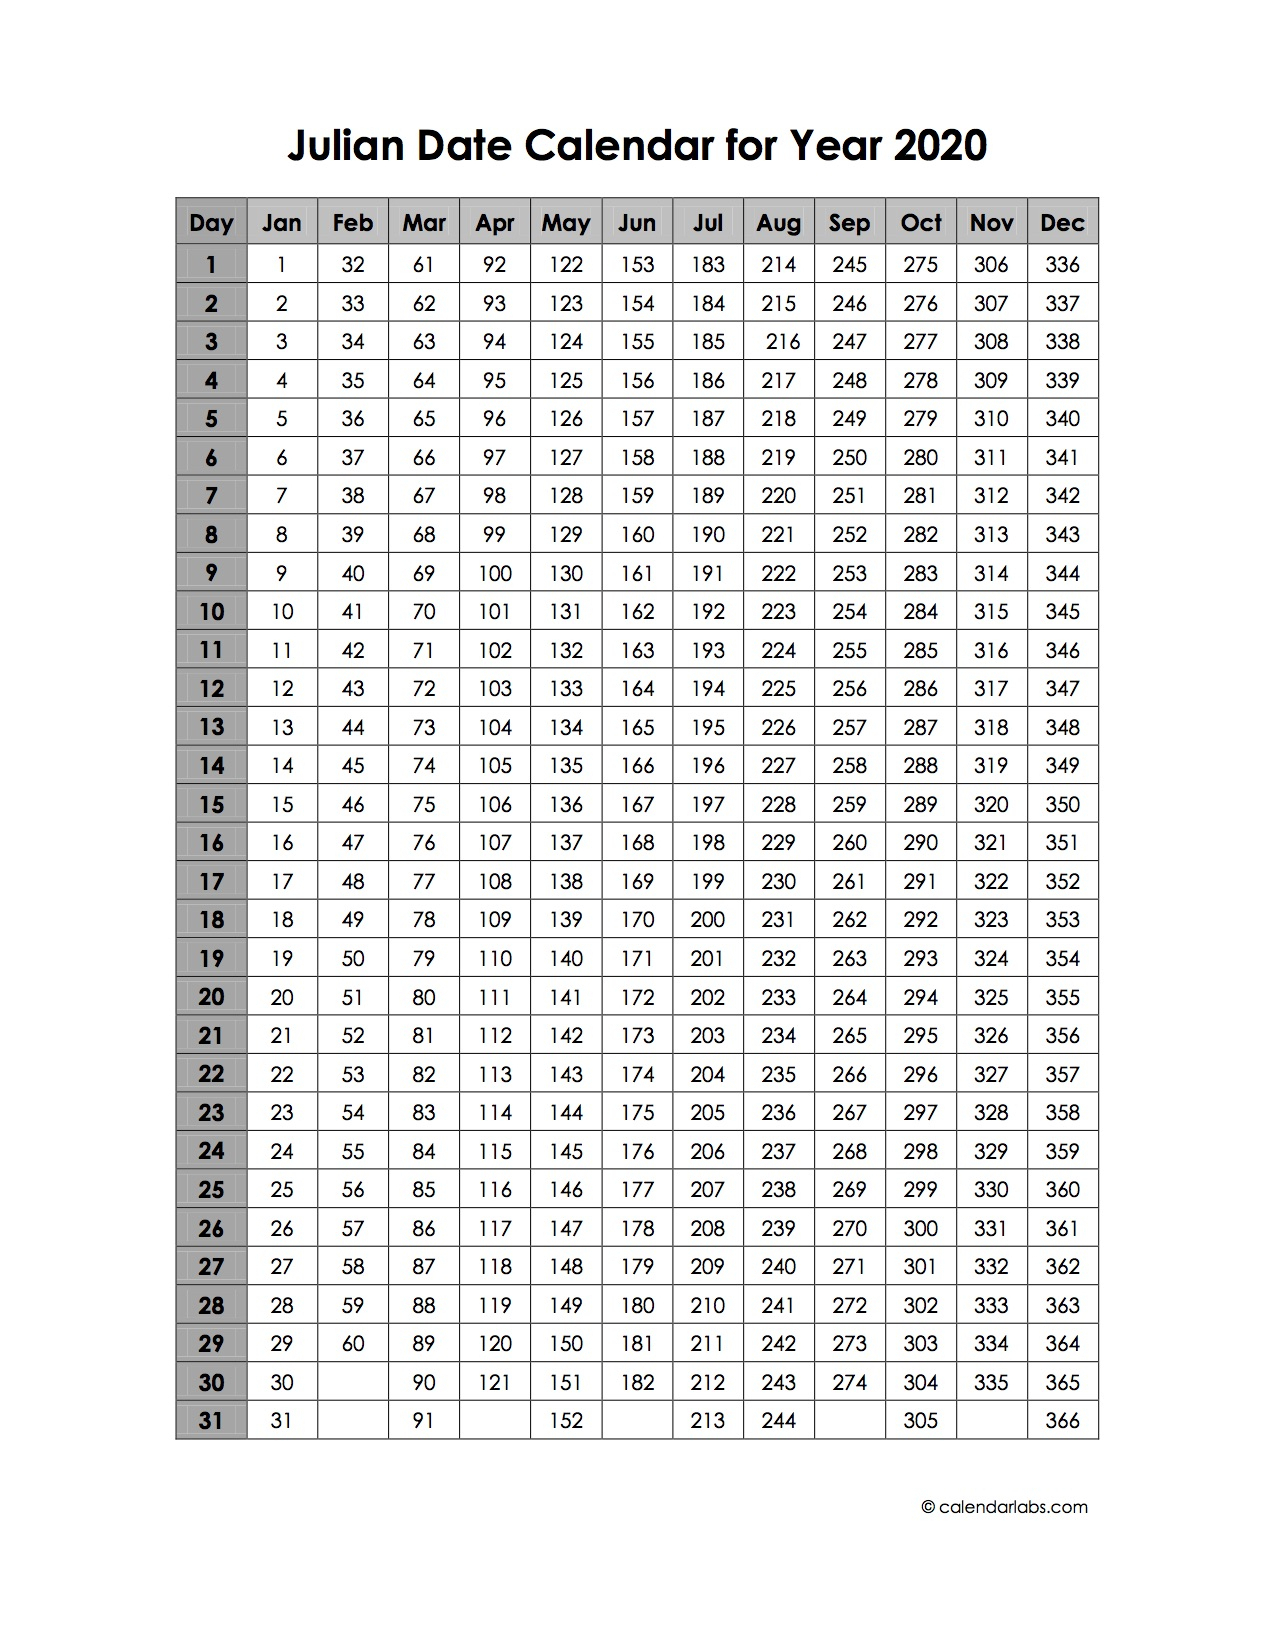 Quadax 2020 Julian Calendar Calendar For Planning 1